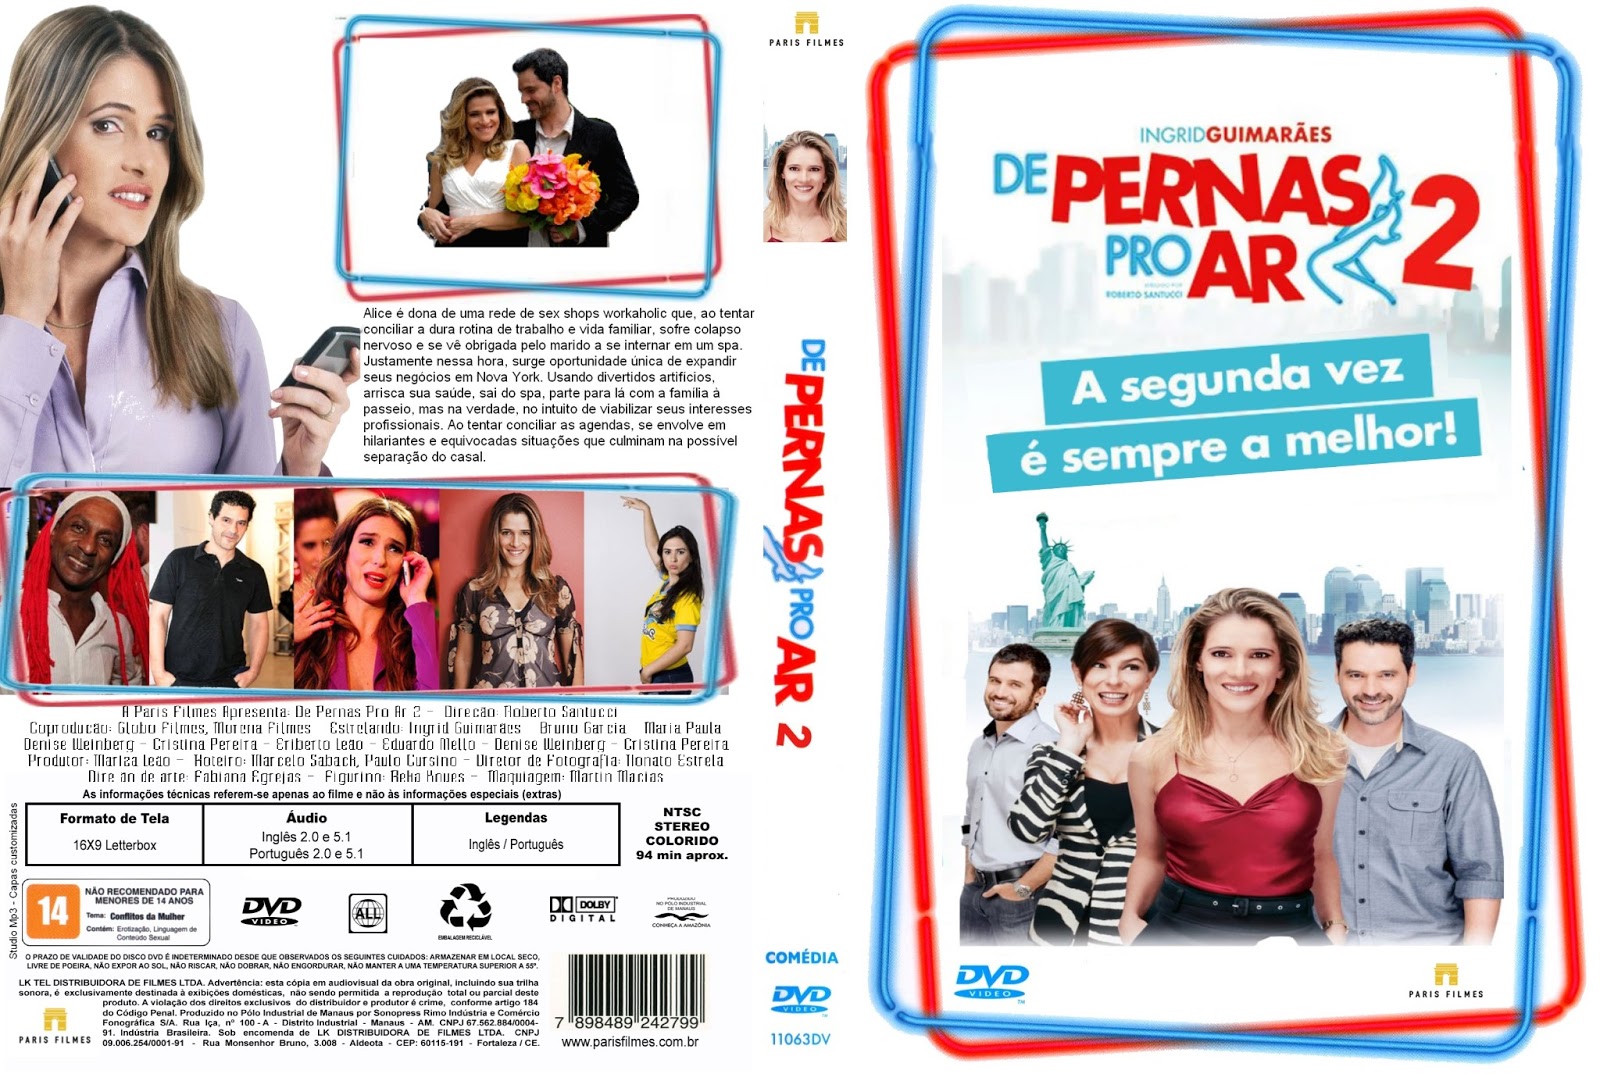 De Pernas Pro Ar Dvd-R 2013